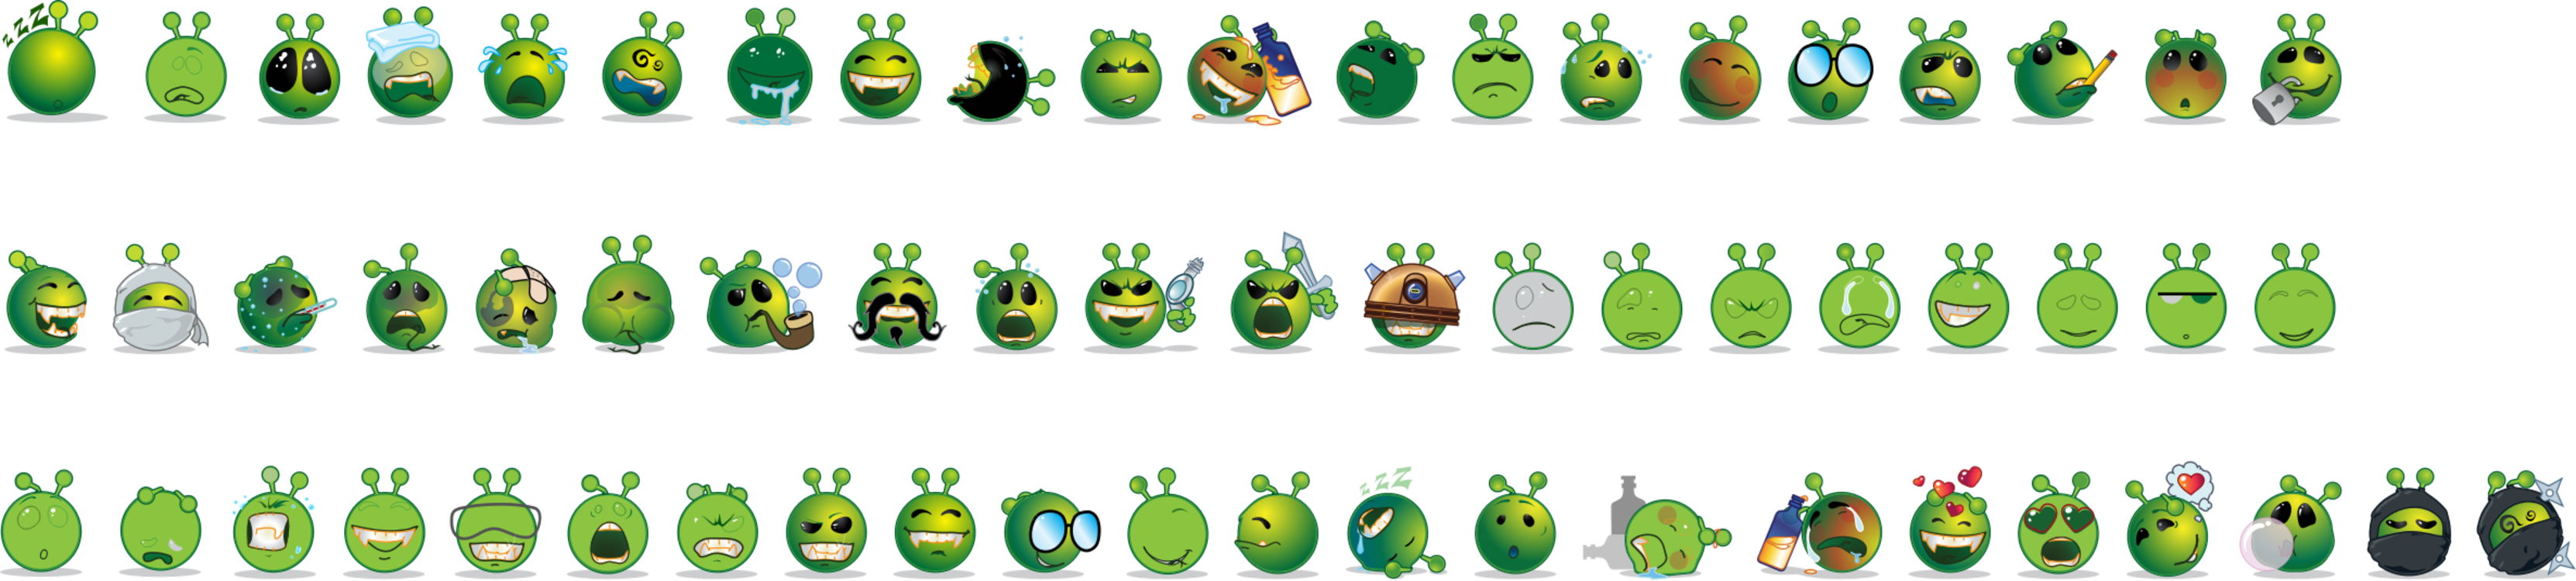 Emoticon,Smiley,Angry Birds